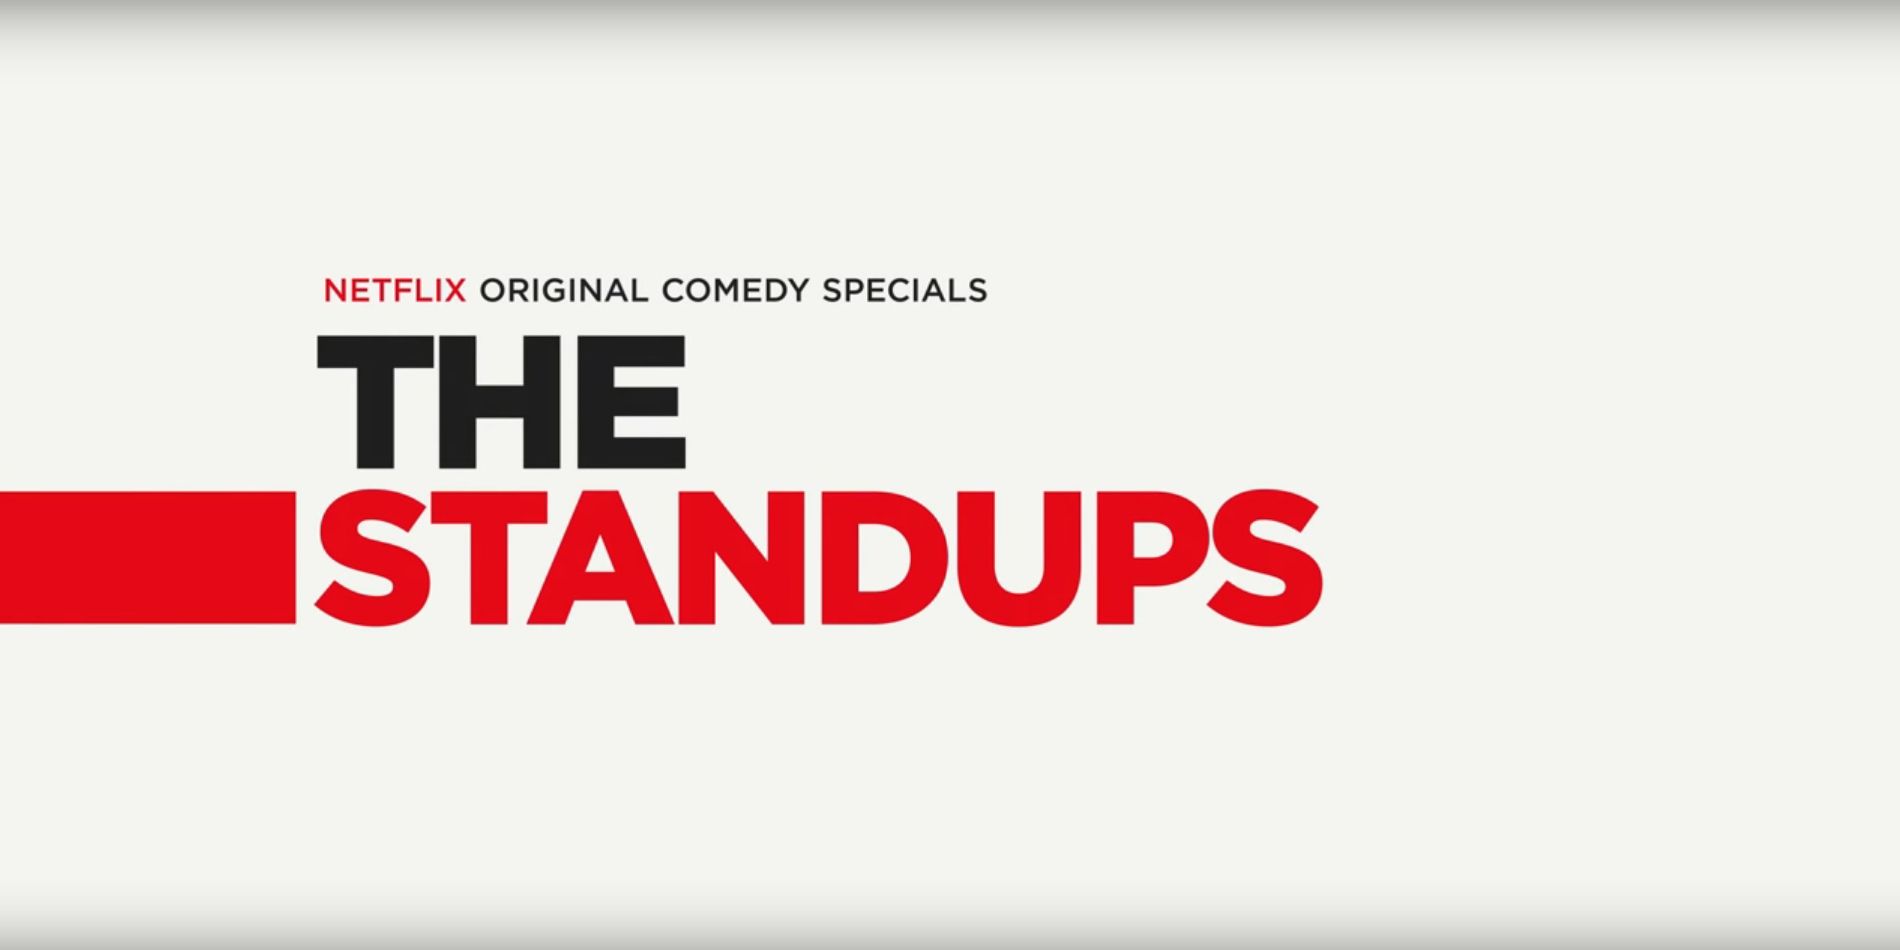 The Standups Netflix